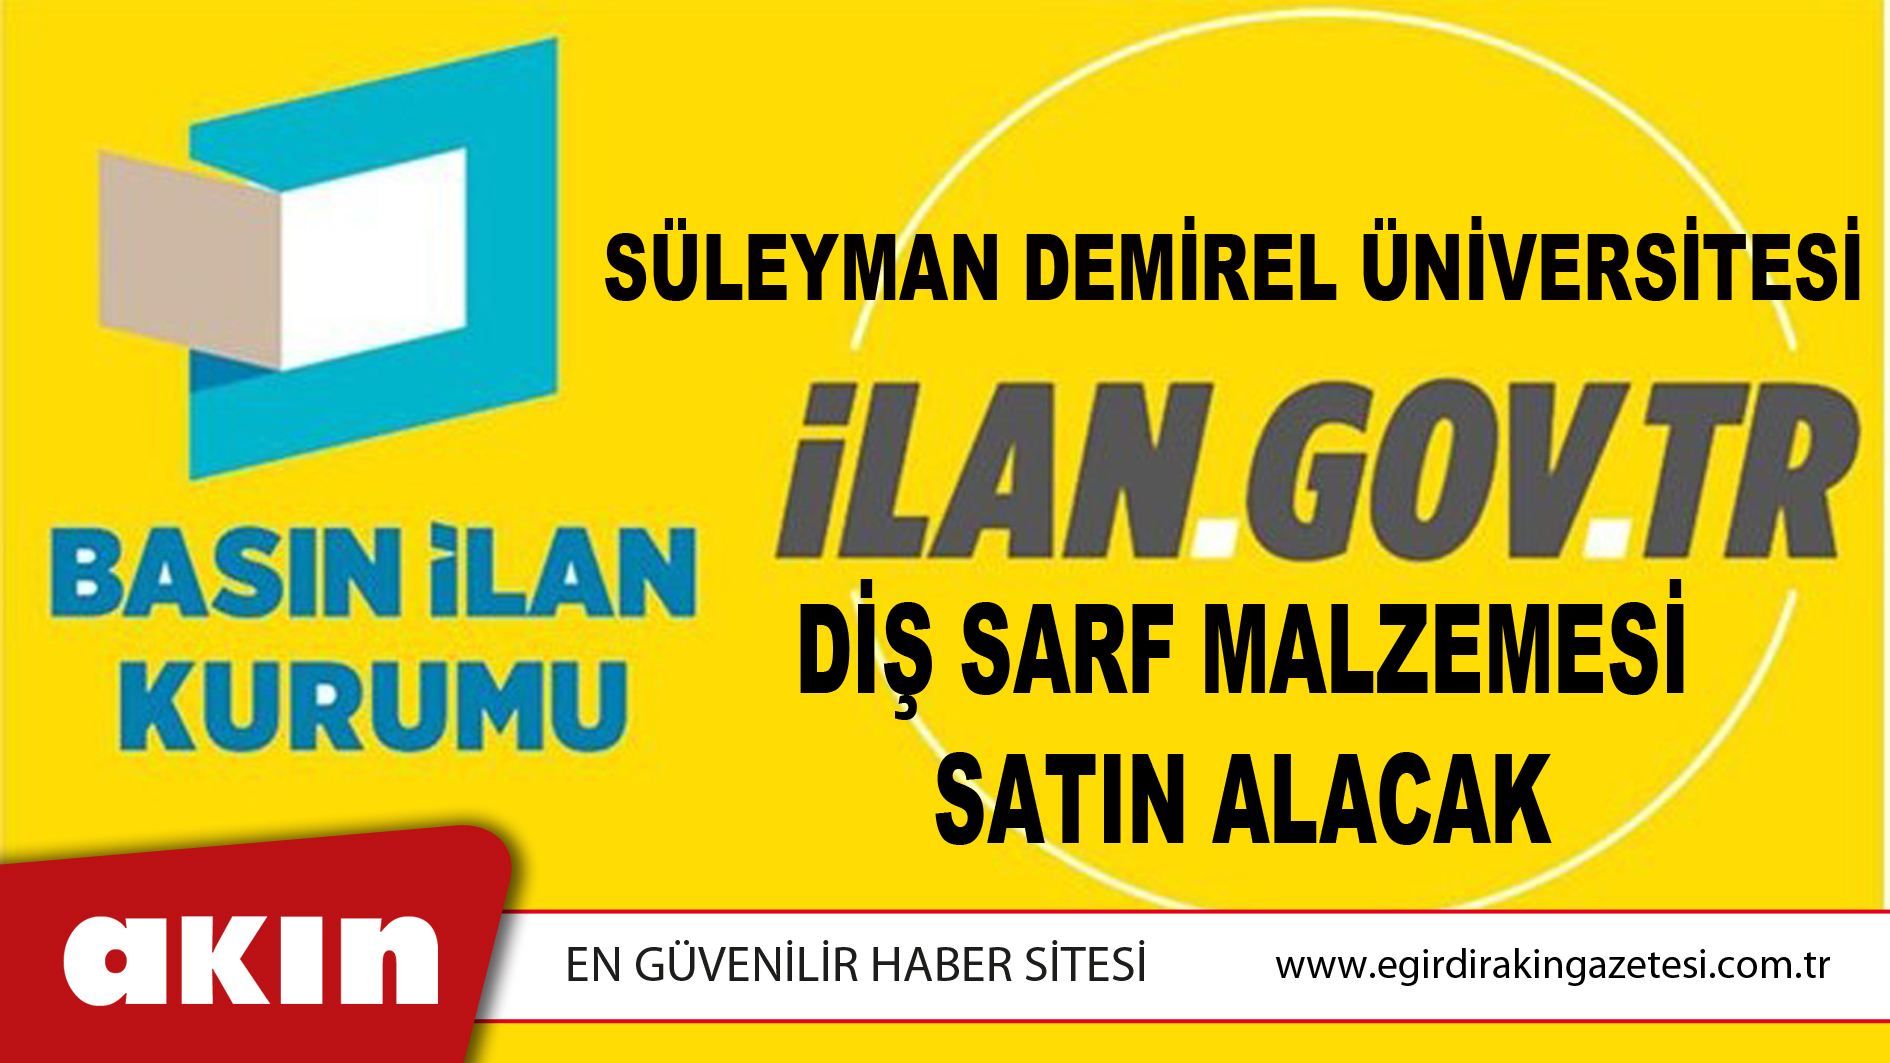 Süleyman Demirel Üniversitesi Diş Sarf Malzemesi Satın Alacak